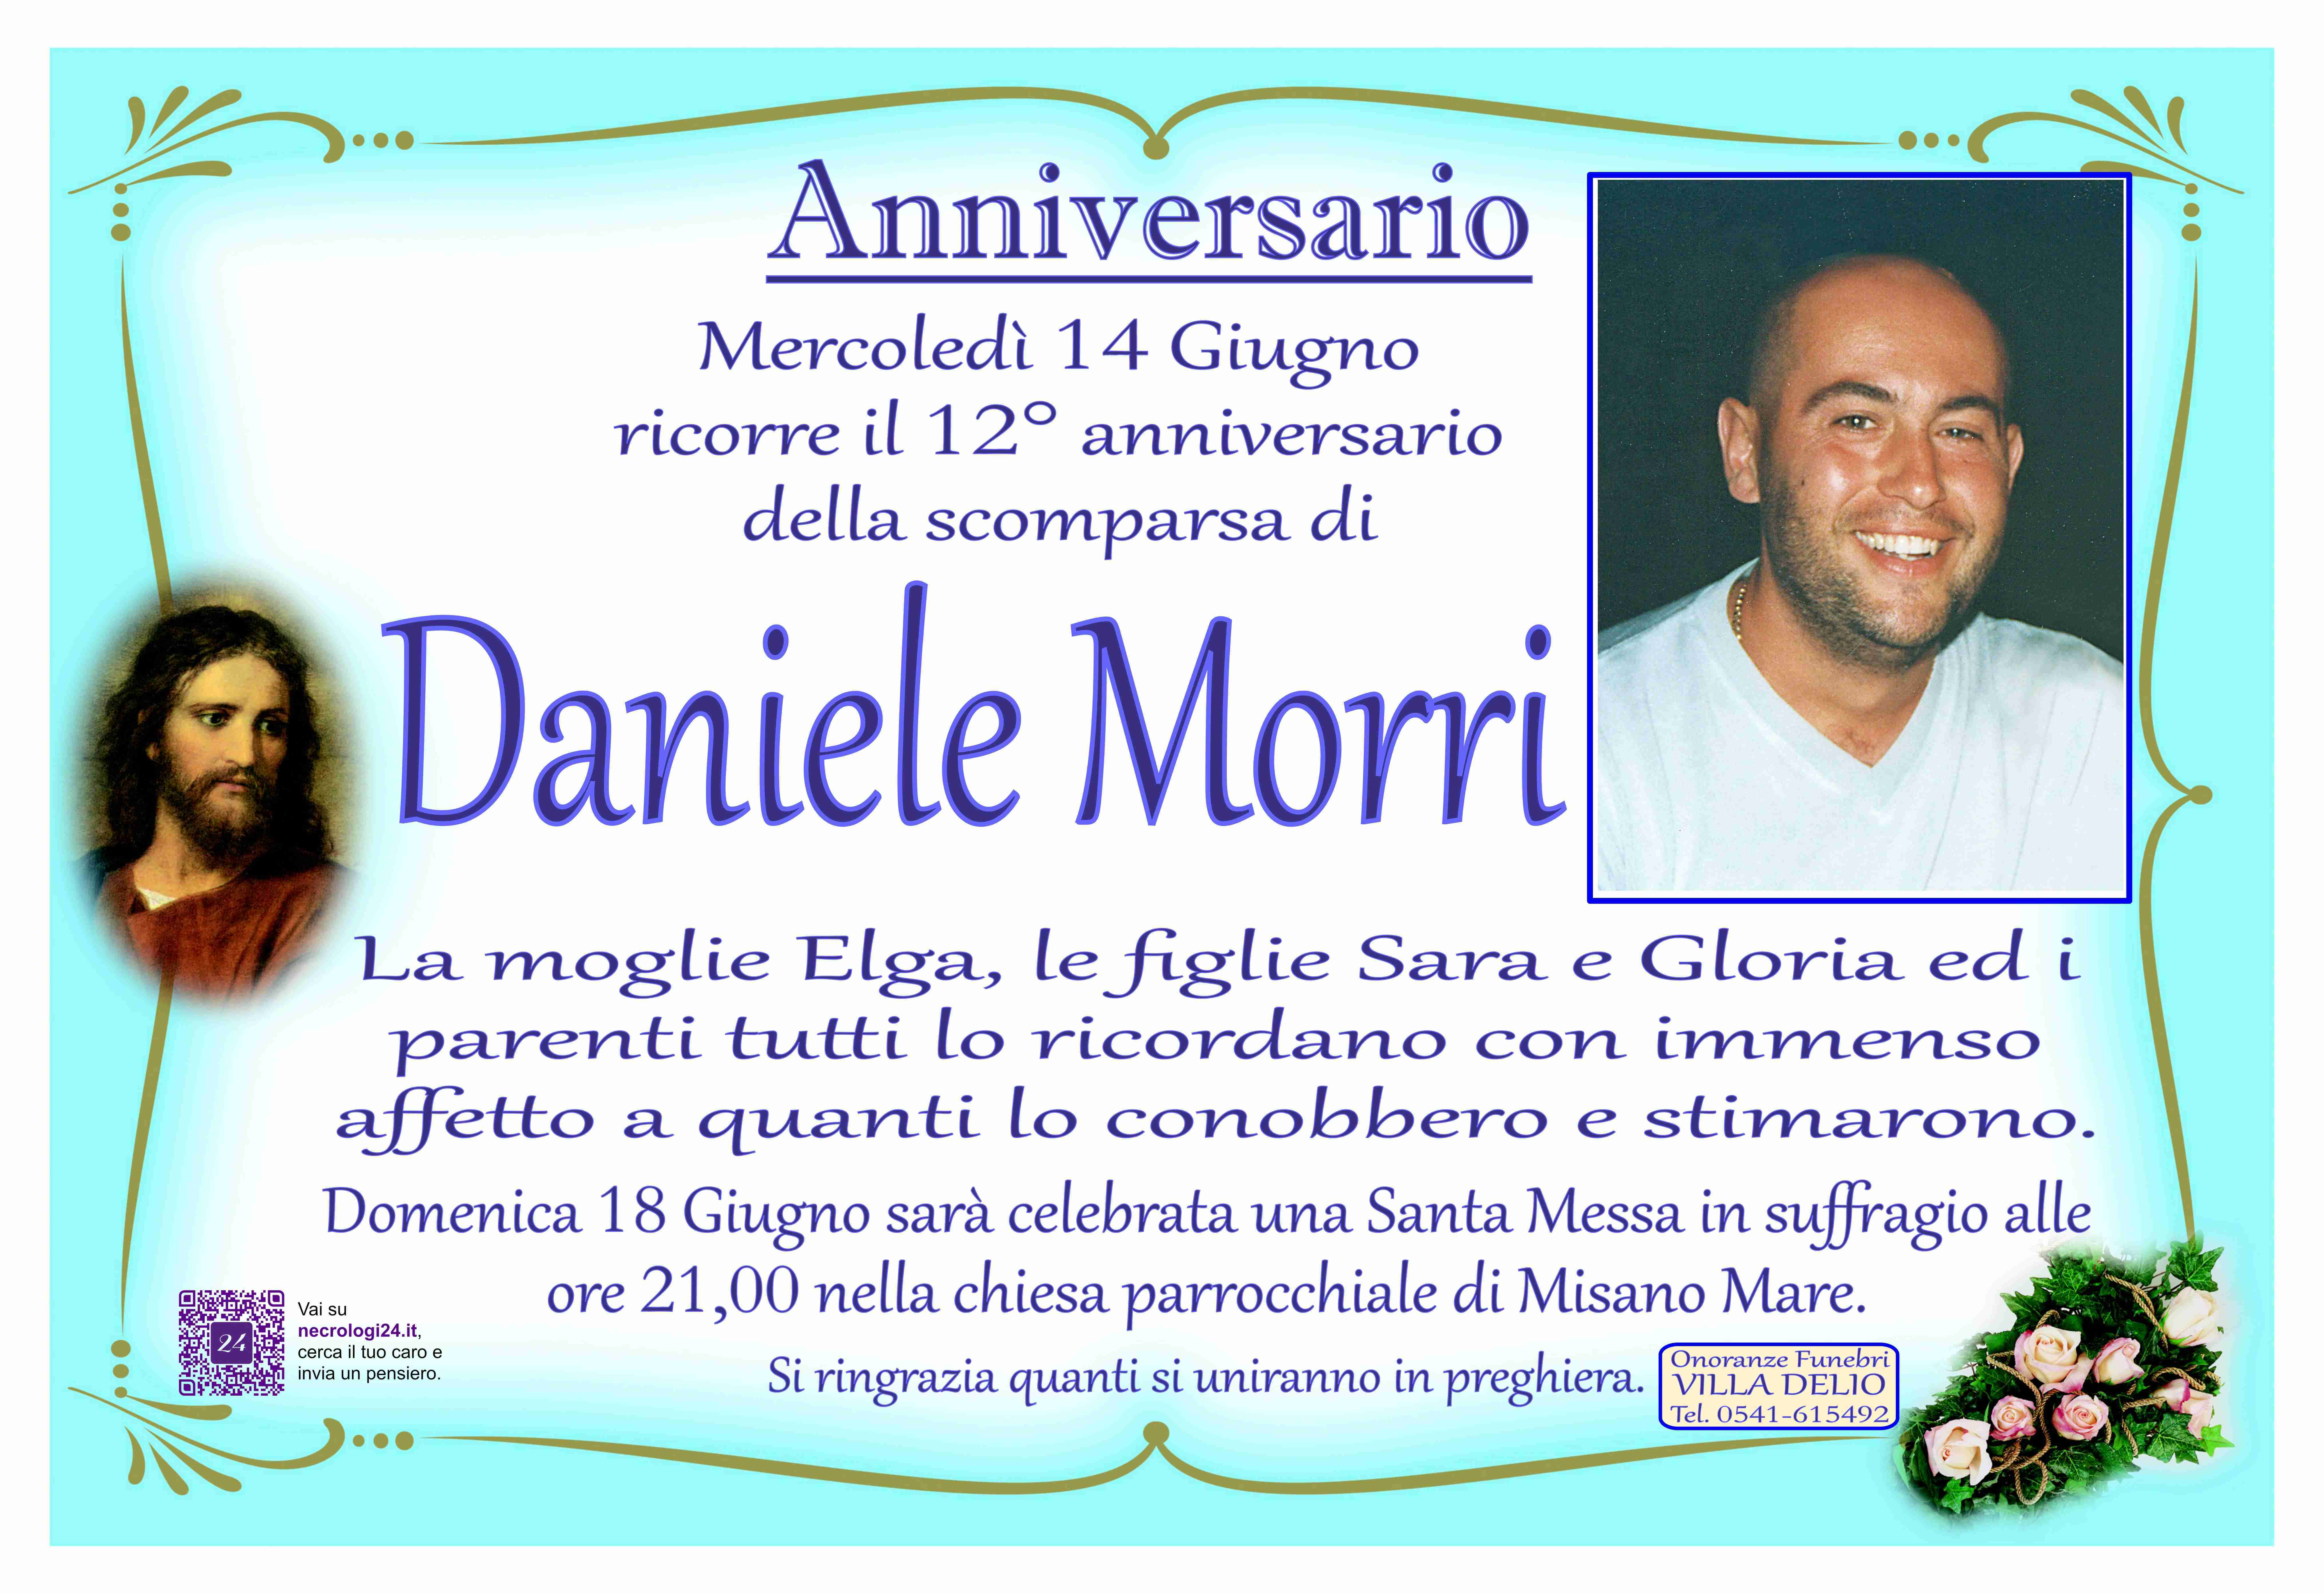 Daniele Morri